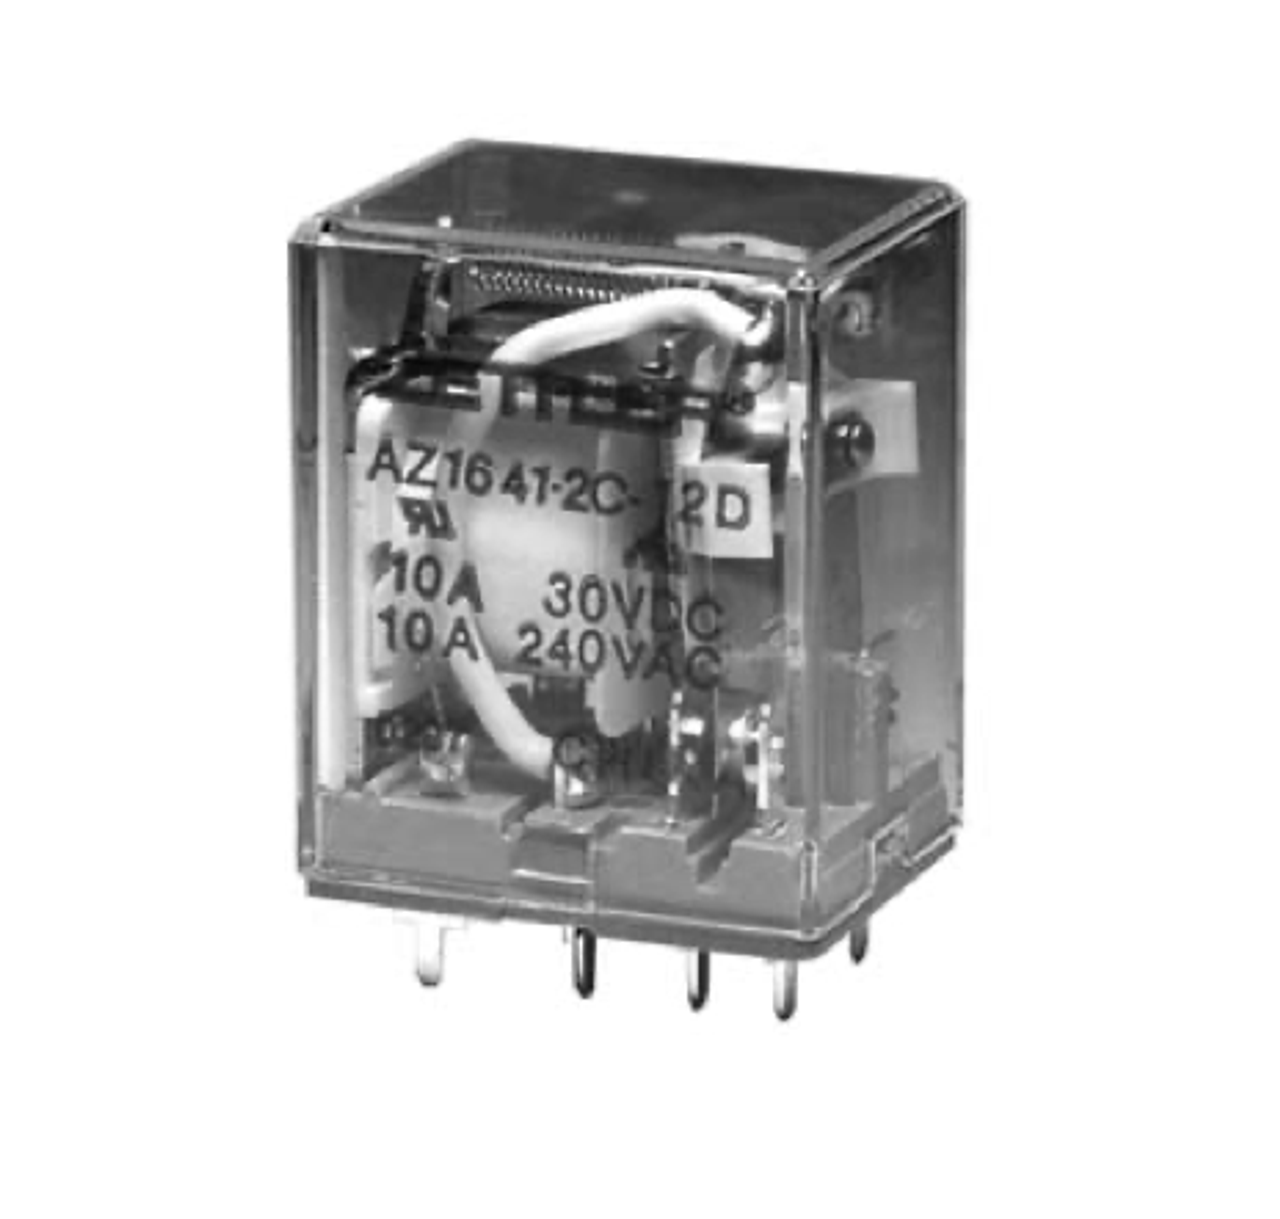 American Zettler AZ1641-3C-220A Power Relay